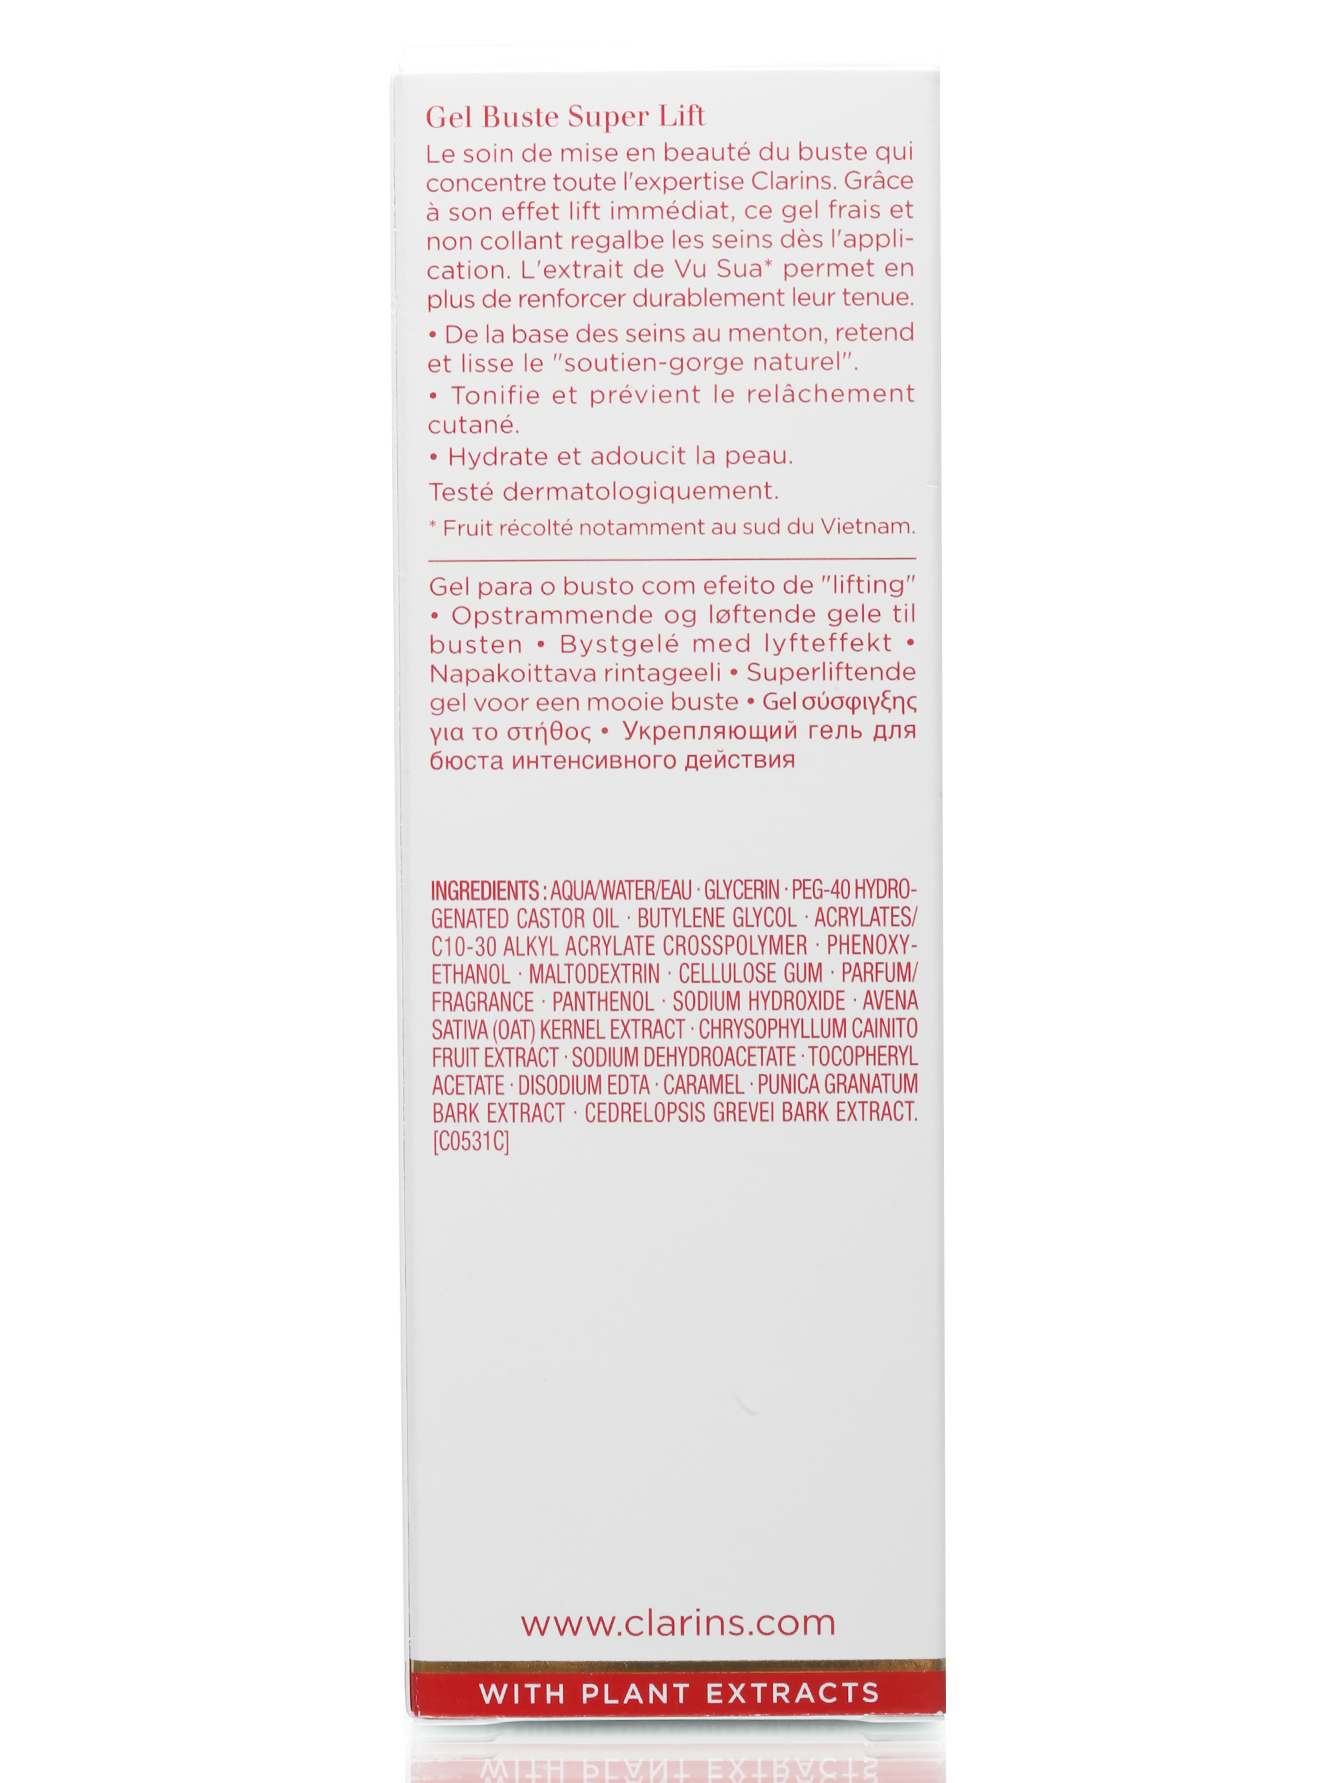 Укрепляющий гель для бюста интенсивного действия - Skin Care, 50ml - Модель Верх-Низ